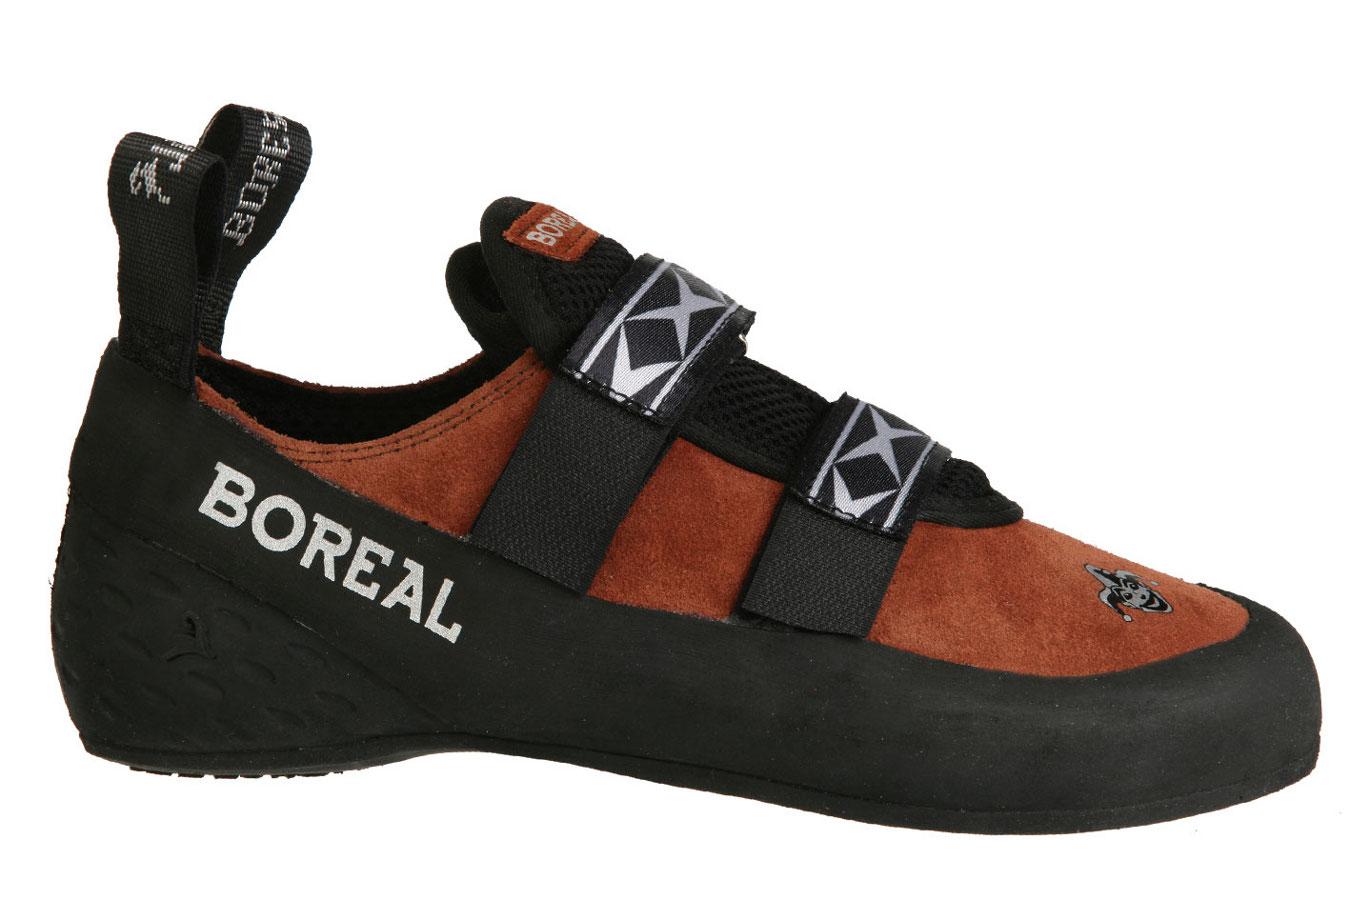 Foto Boreal Joker Velcro Zapatillas para escalada marrón/negro, 39,5